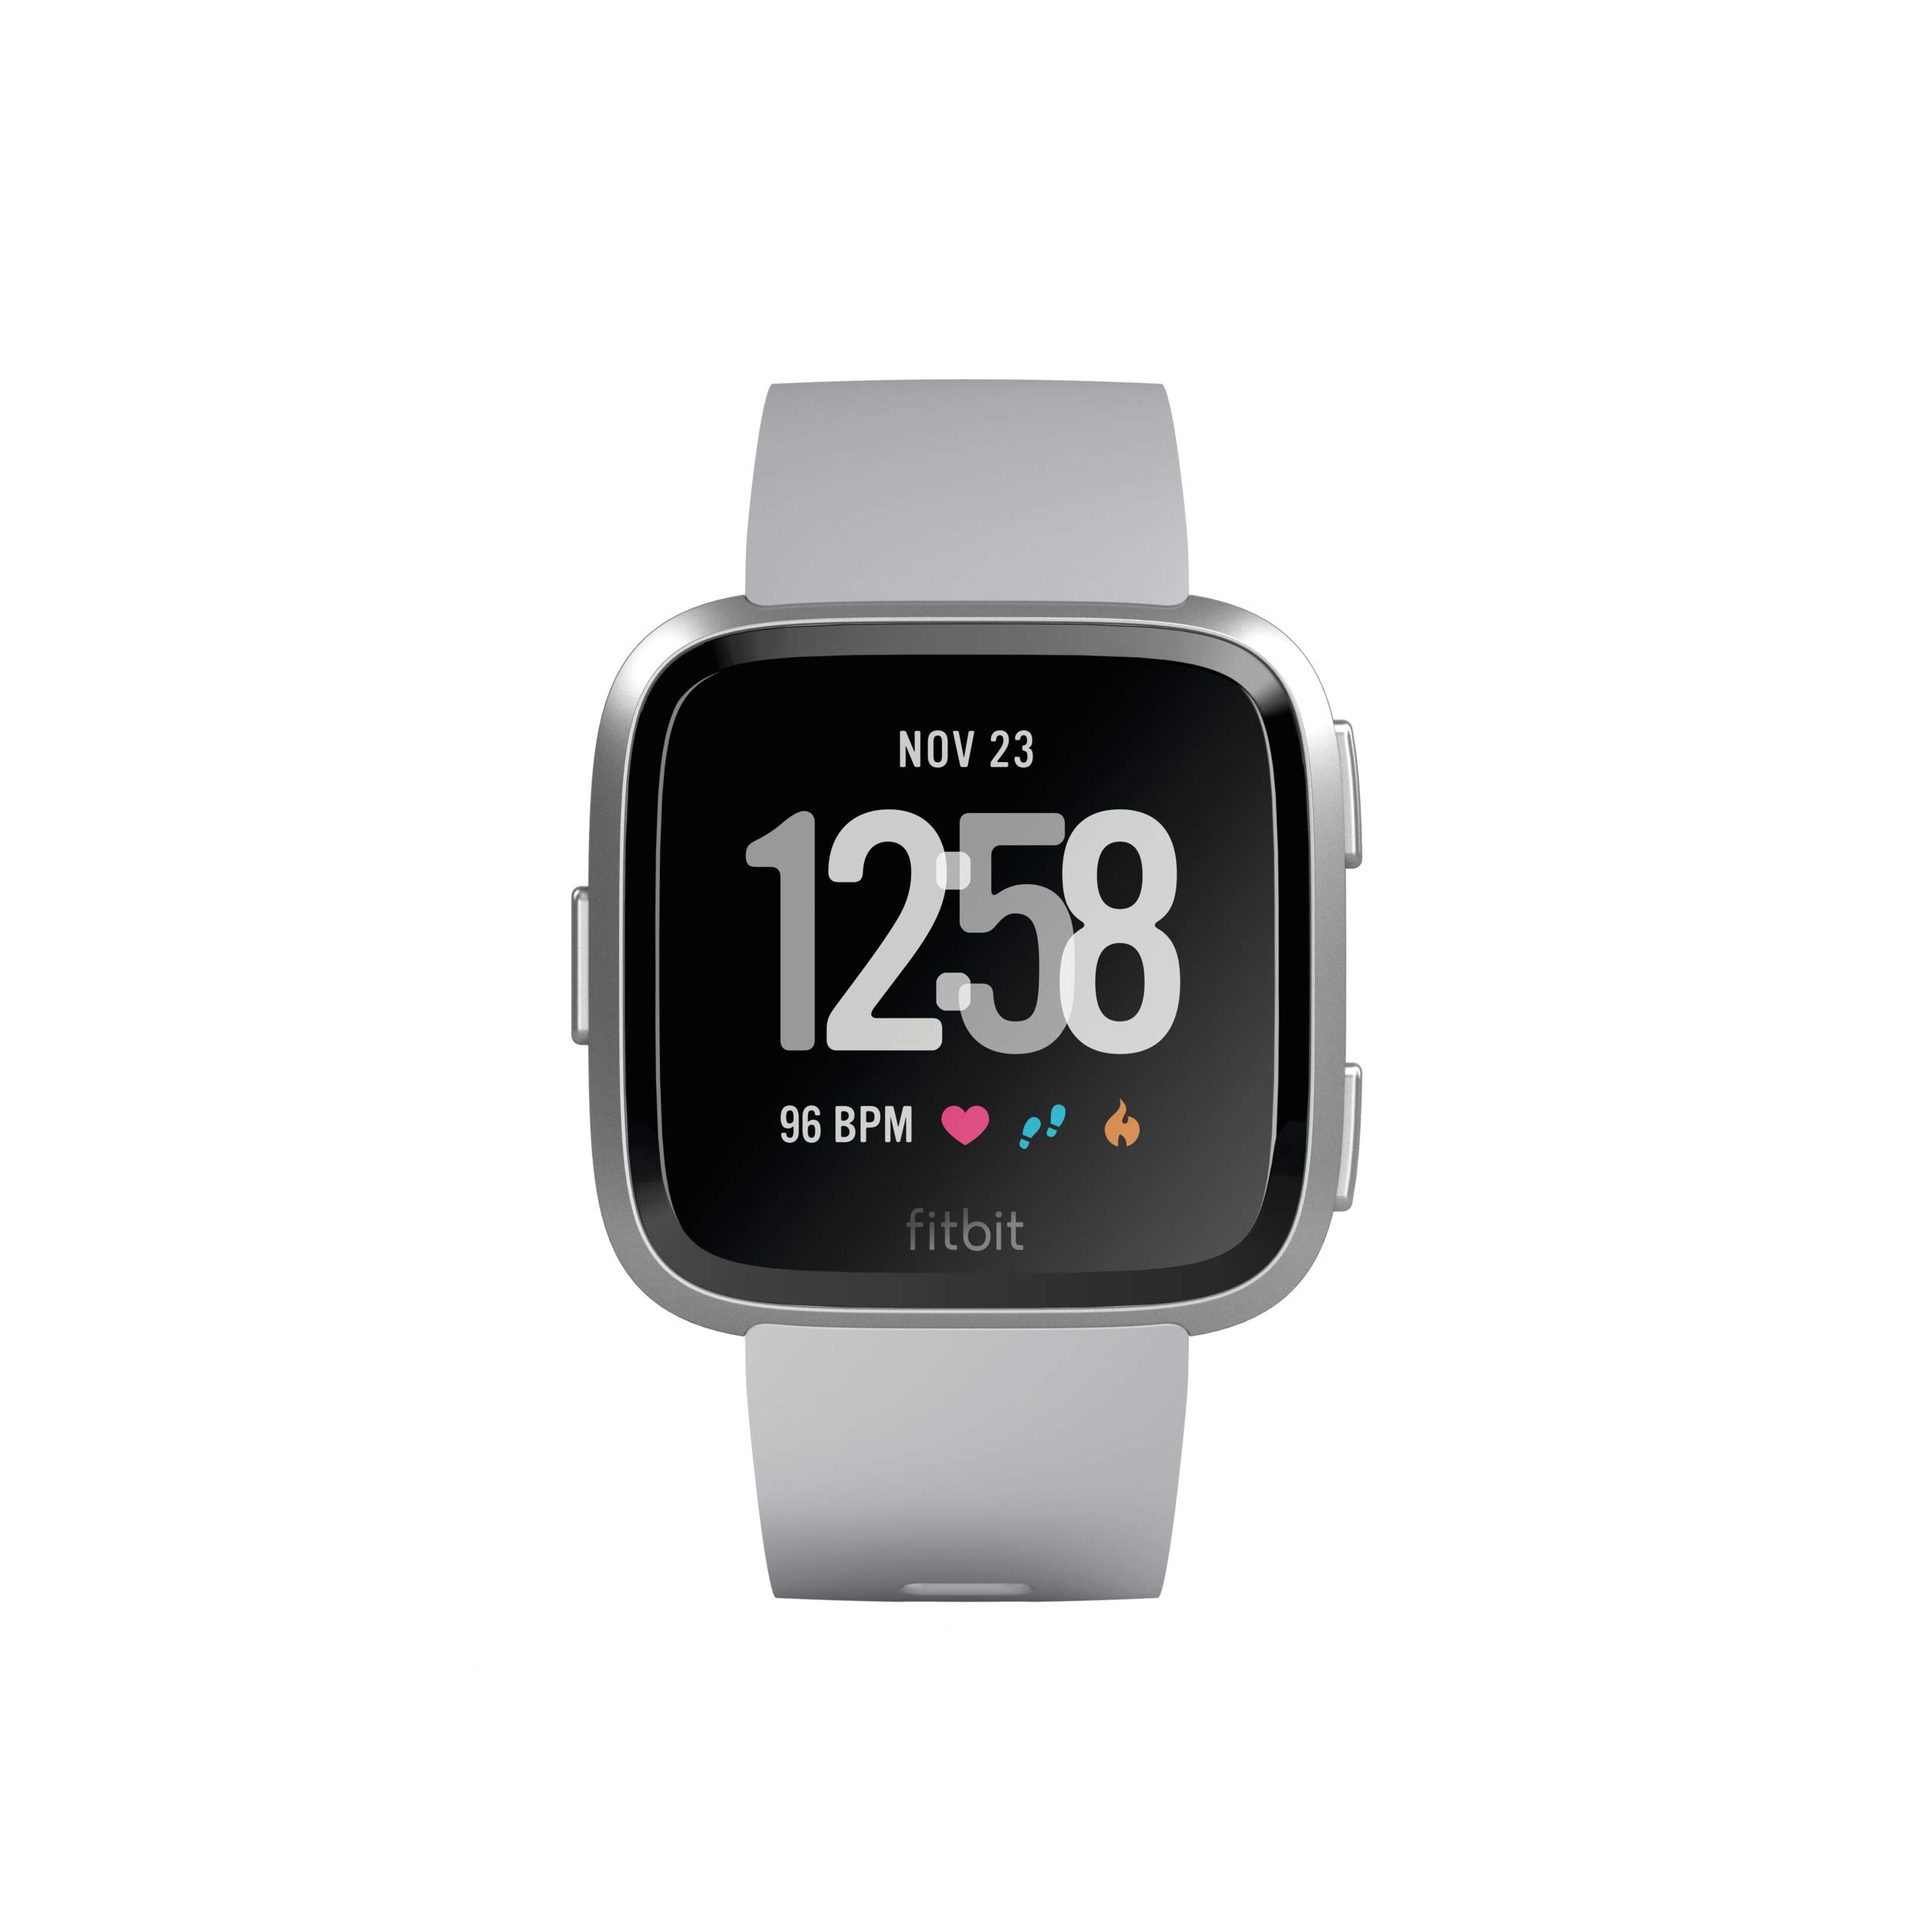 Fitbit Versa, Gesundheits & Fitness Smartwatch mit Herzfrequenzmessung, 4+ Tage Akkulaufzeit & Wasserabweisend bis 50 m Tiefe, Grau